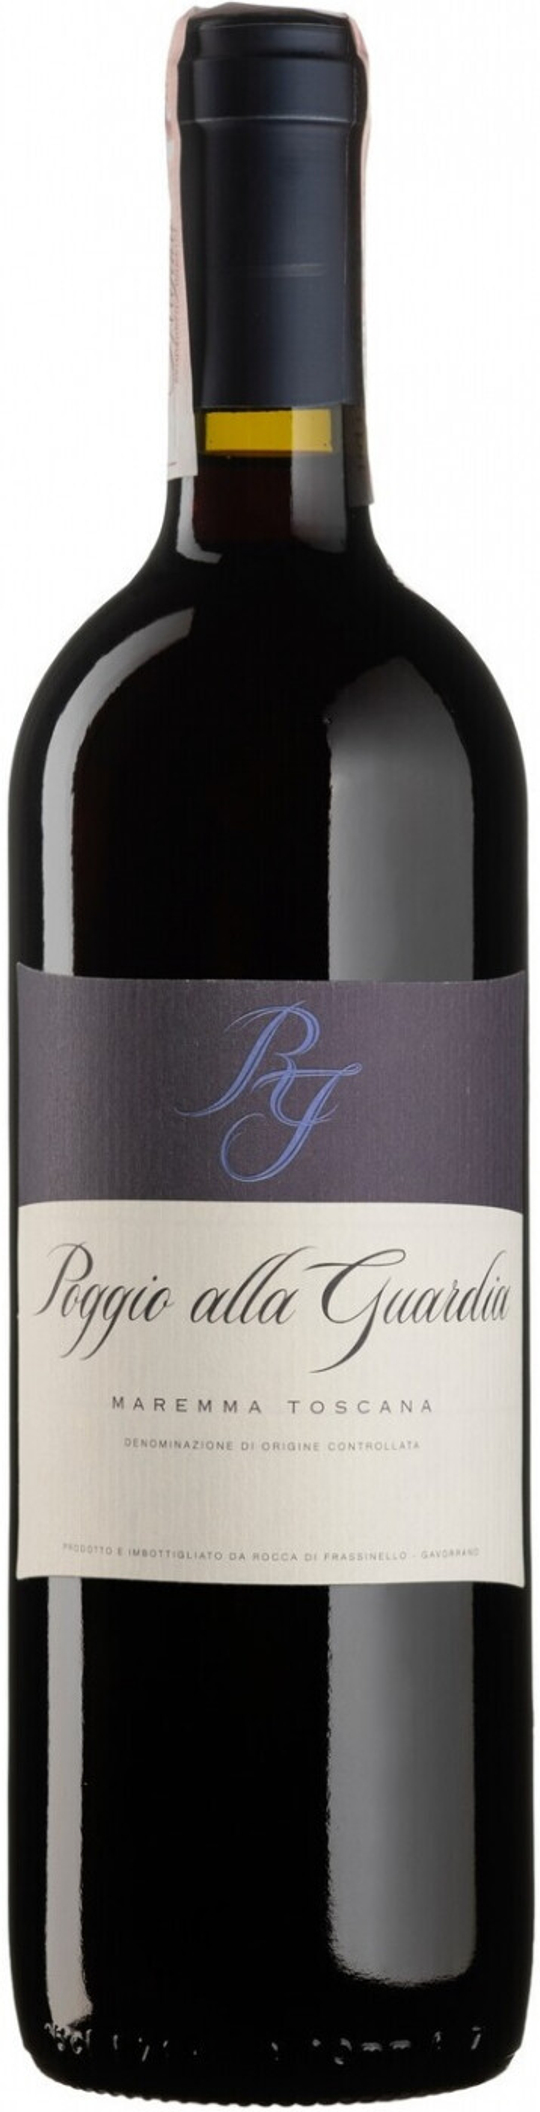 Вино Rocca di Frassinello Poggio alla Guardia, 0,75 л.